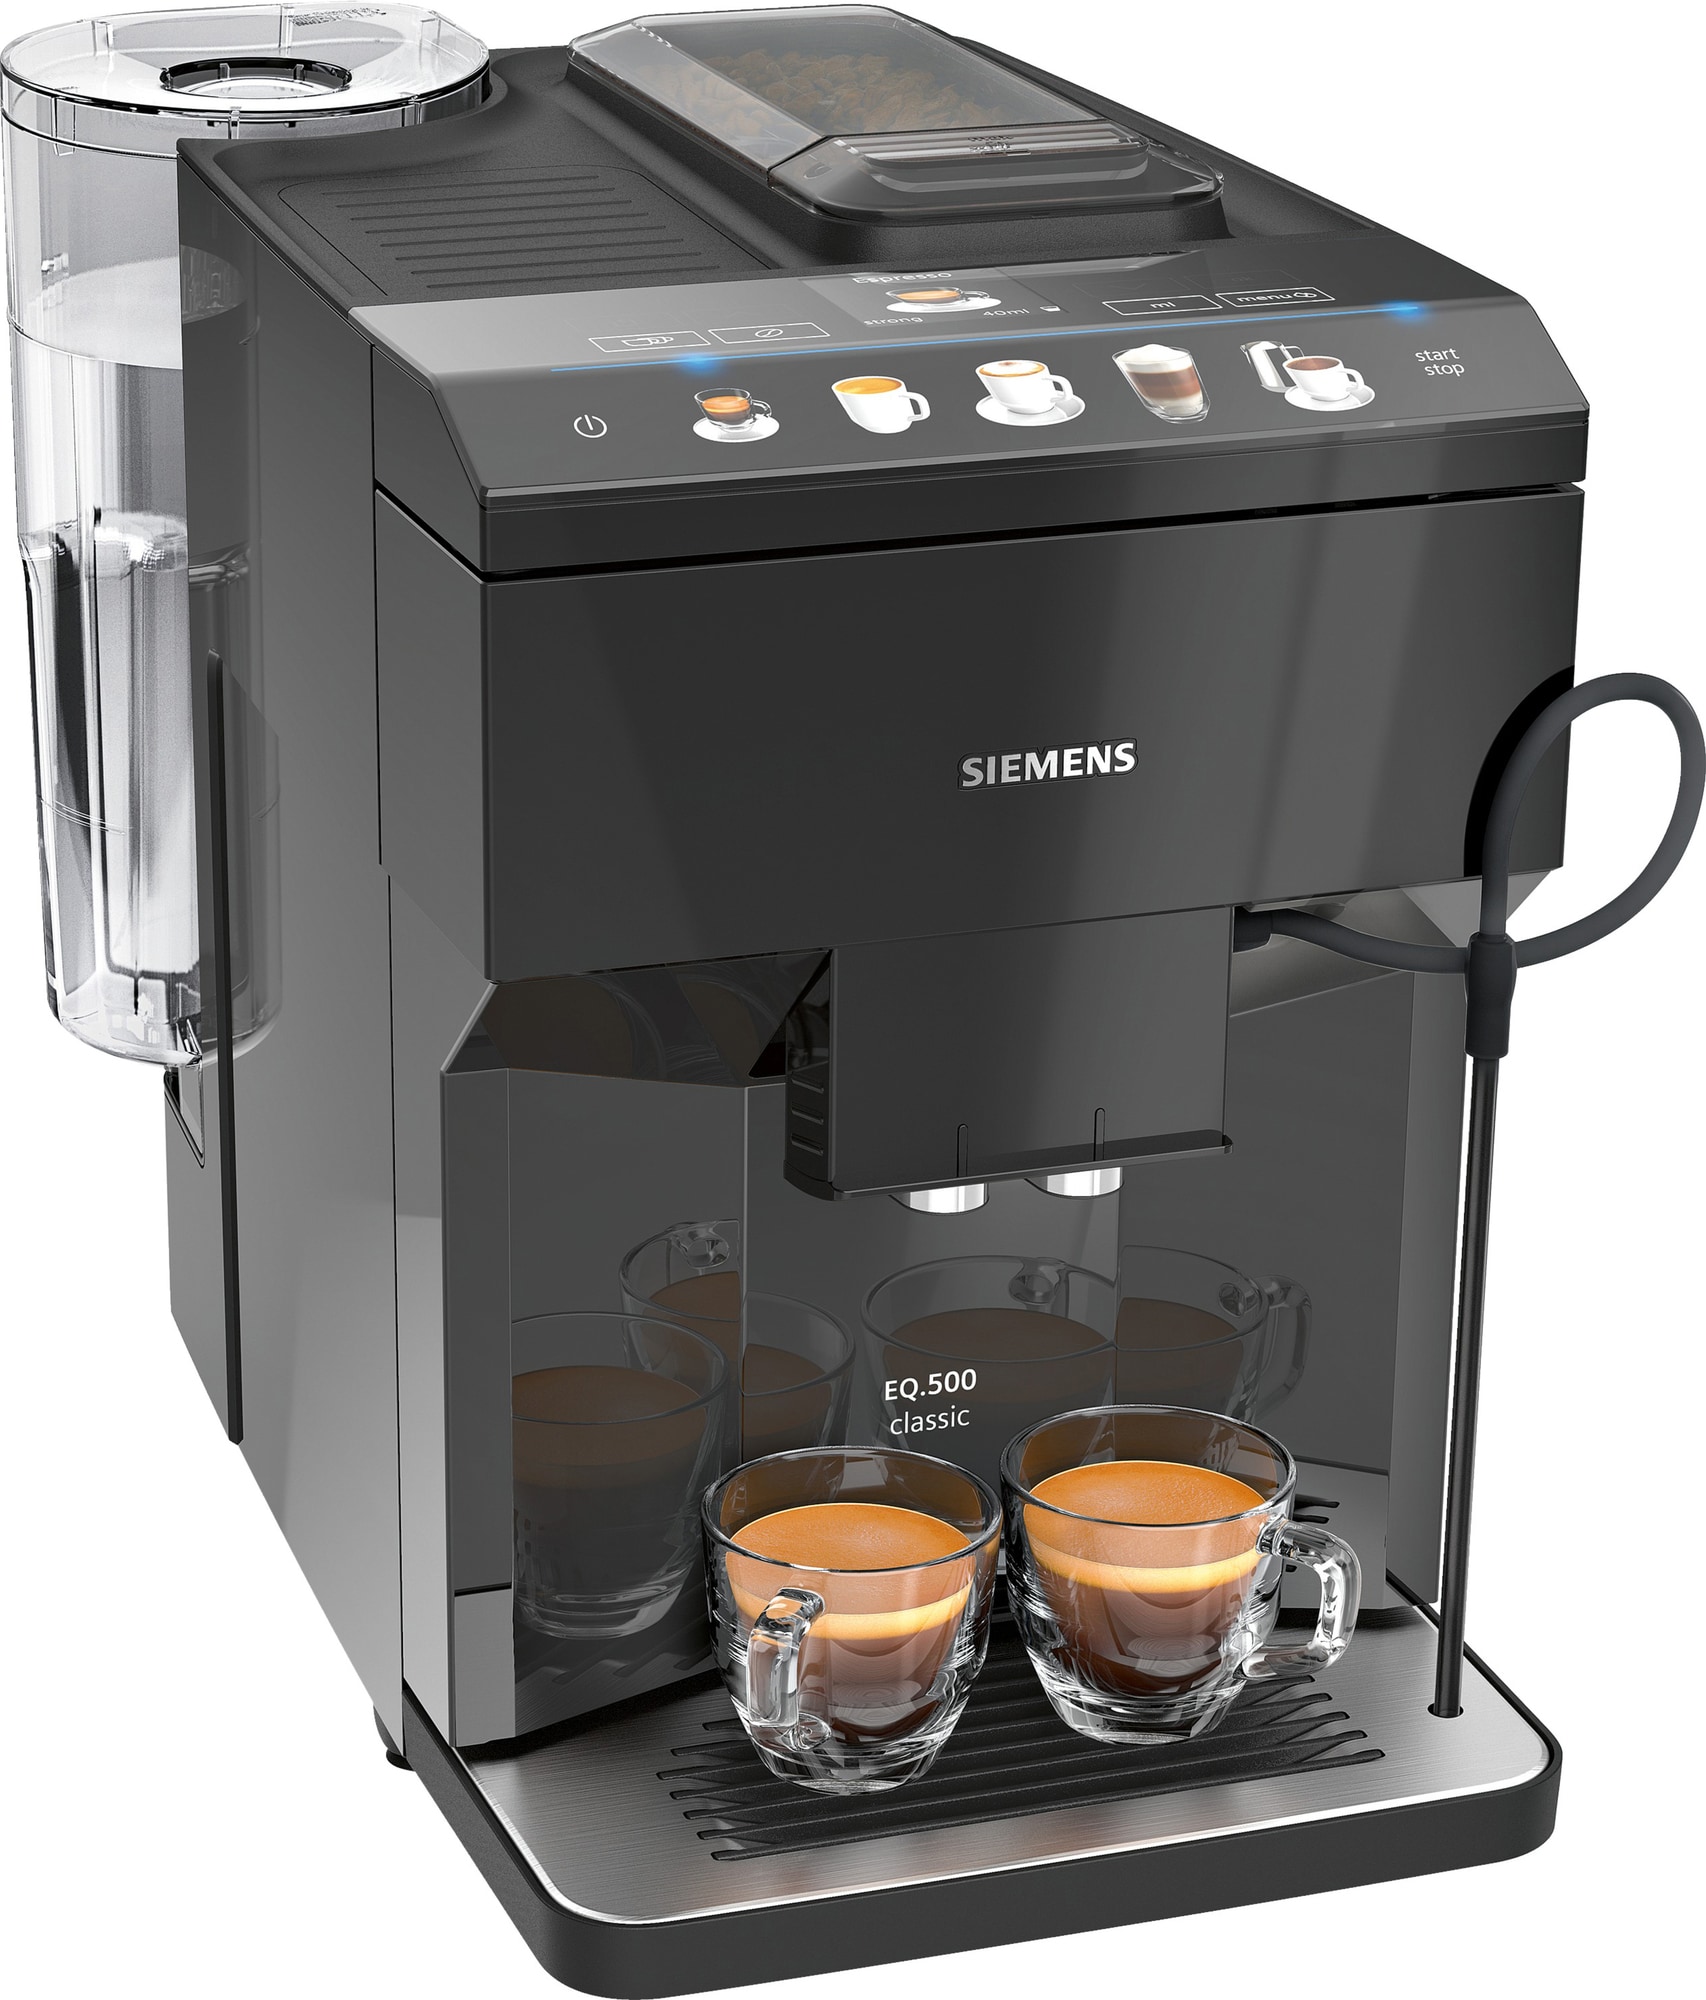 Siemens espressomaskiner | Se de nye 2022 modeller | Espressolover.dk